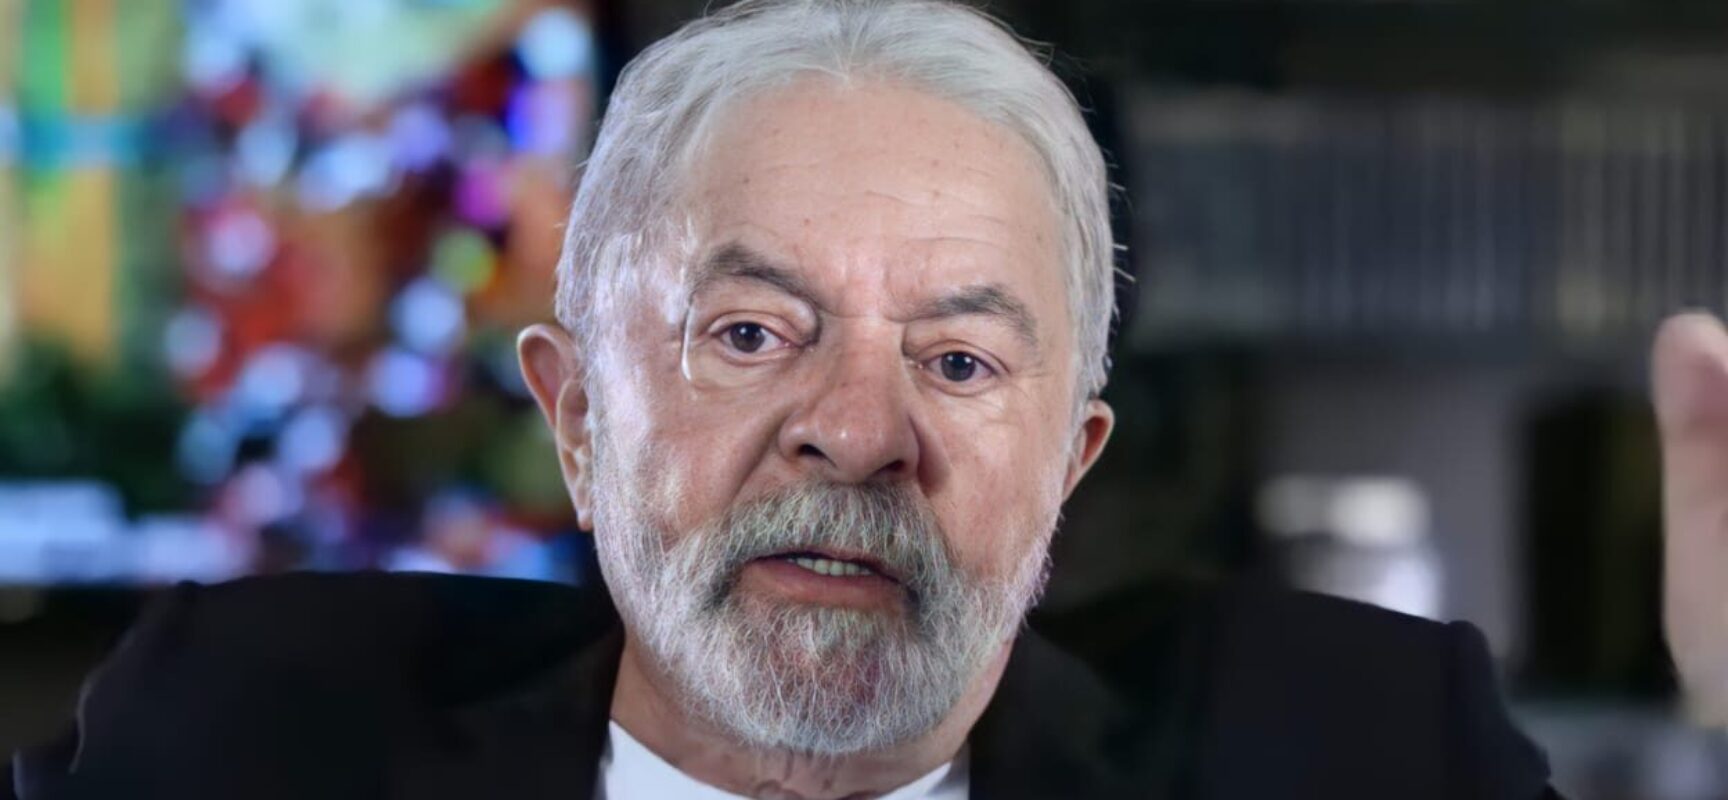 Lula: “Minha candidatura é um movimento para reconstruir a democracia e economia”